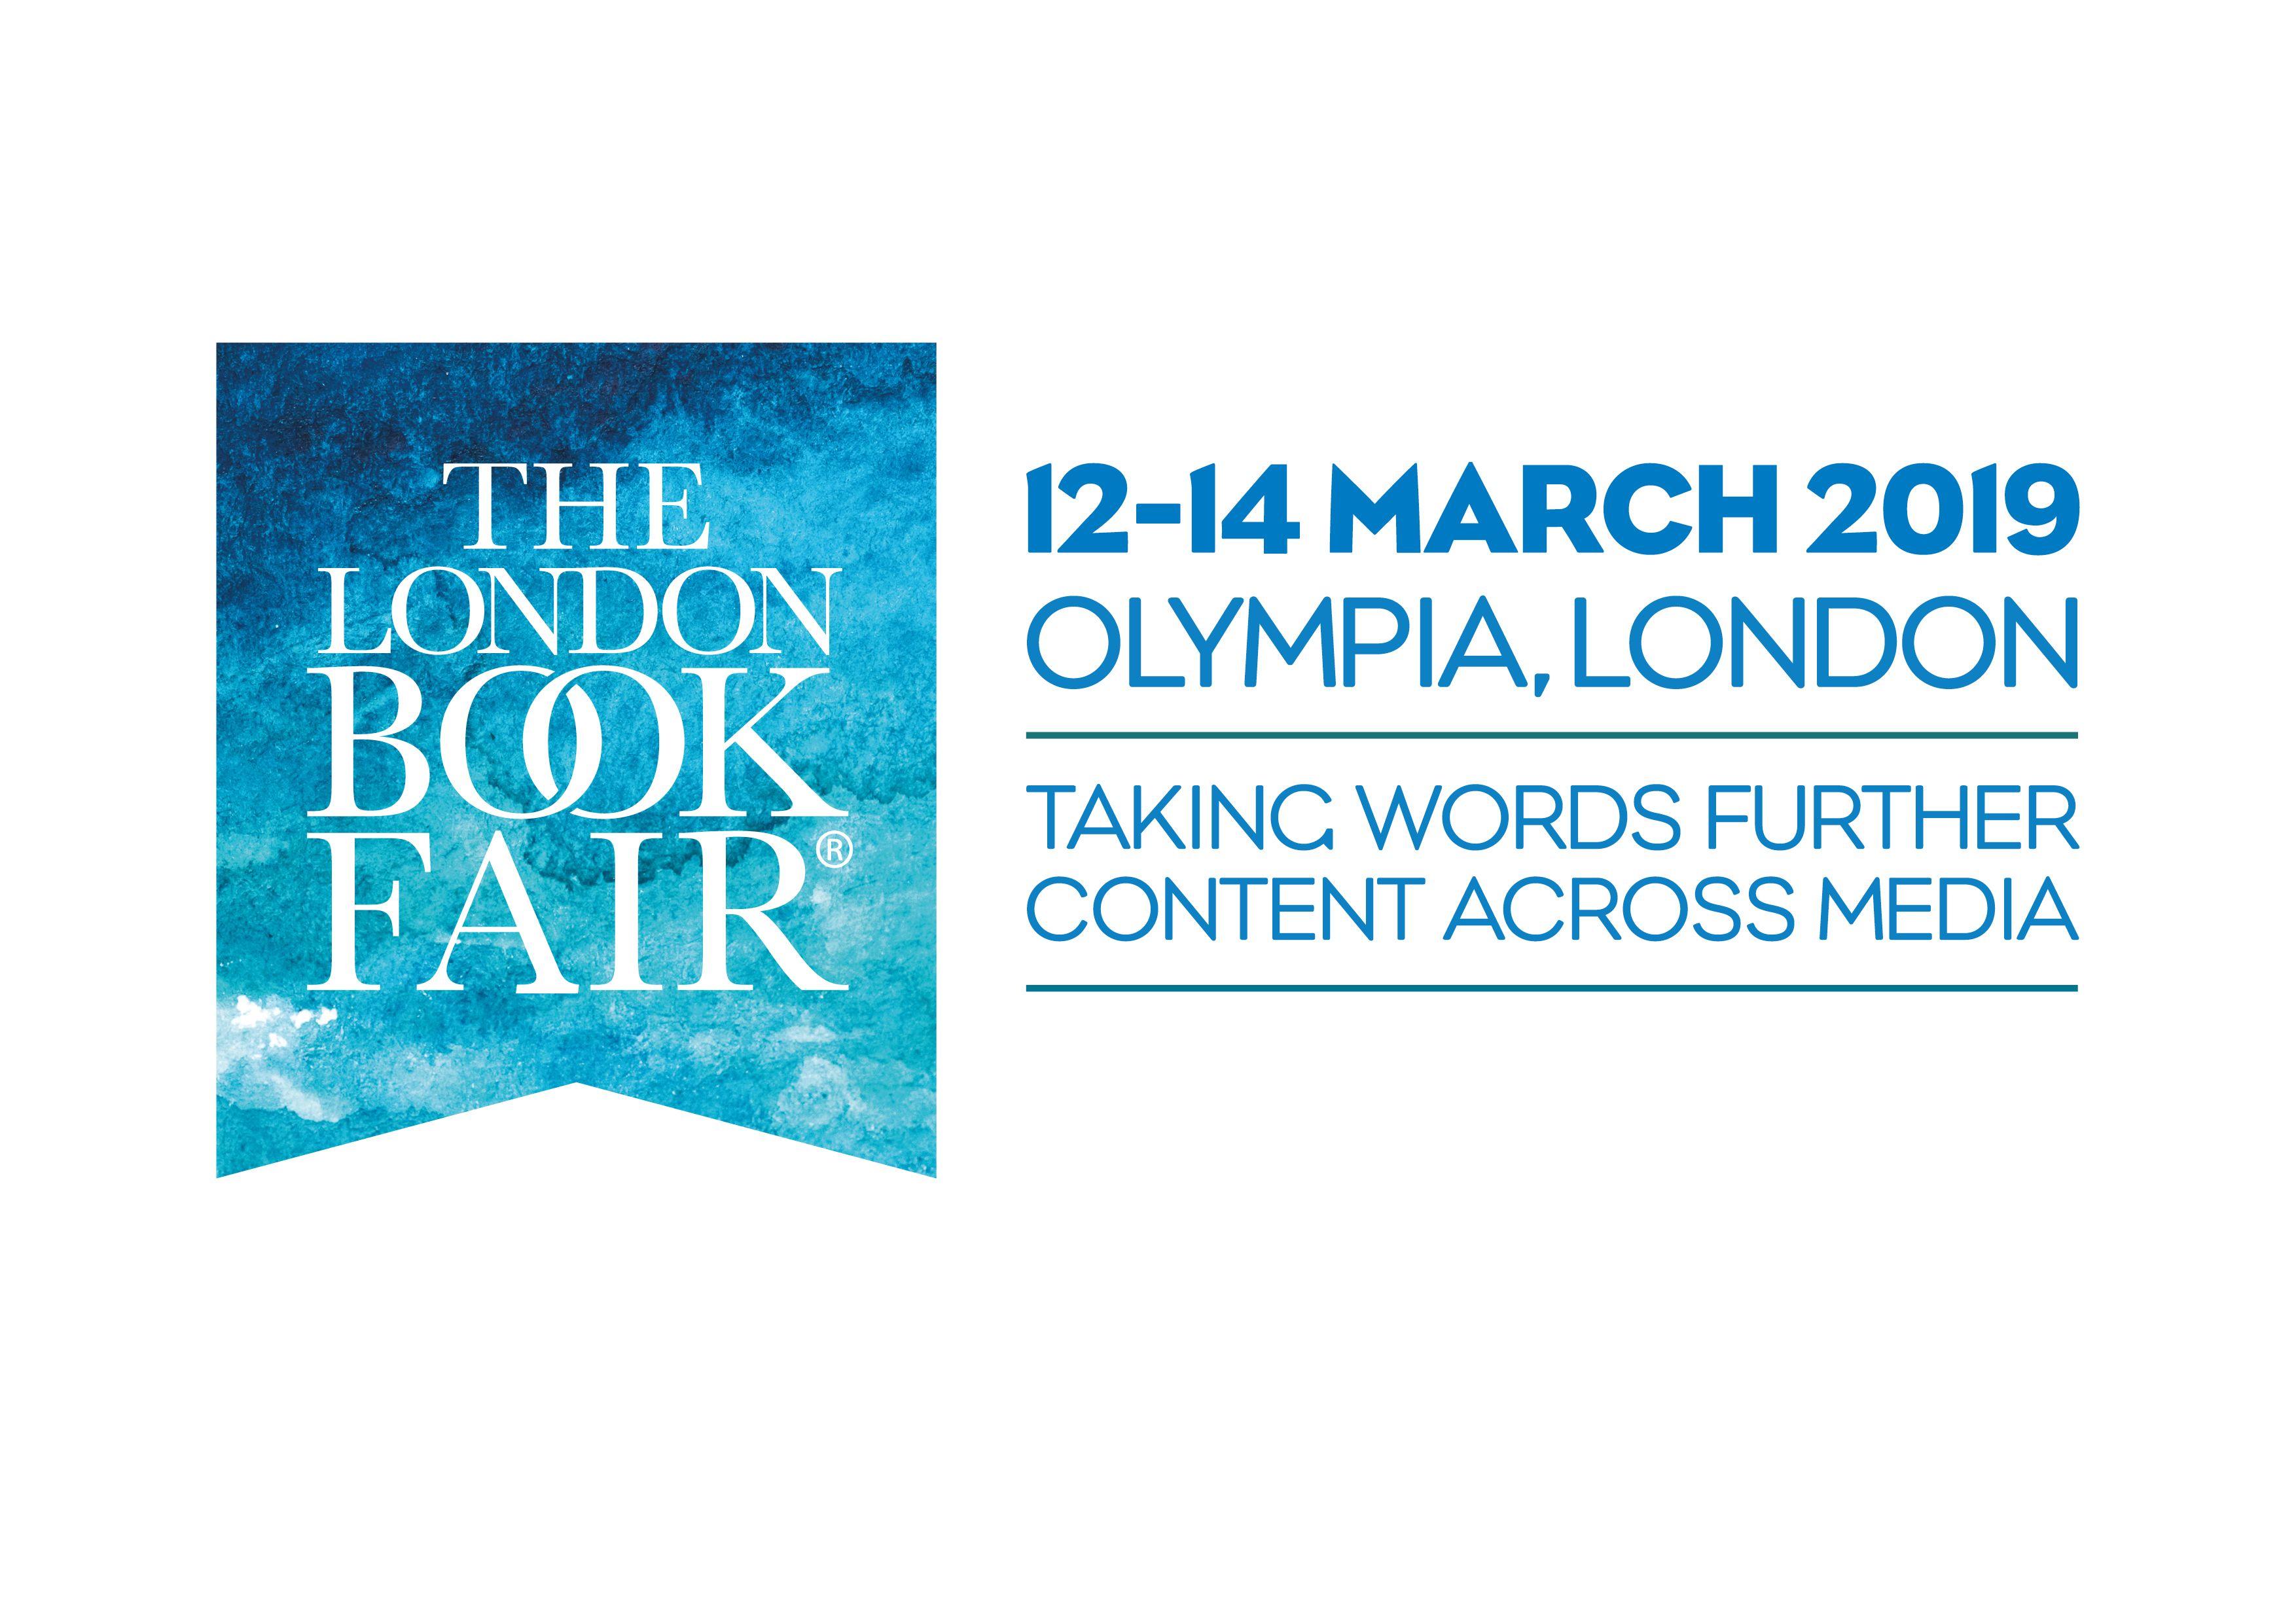 Fair Logo - Download Logos and Banners - The London Book Fair